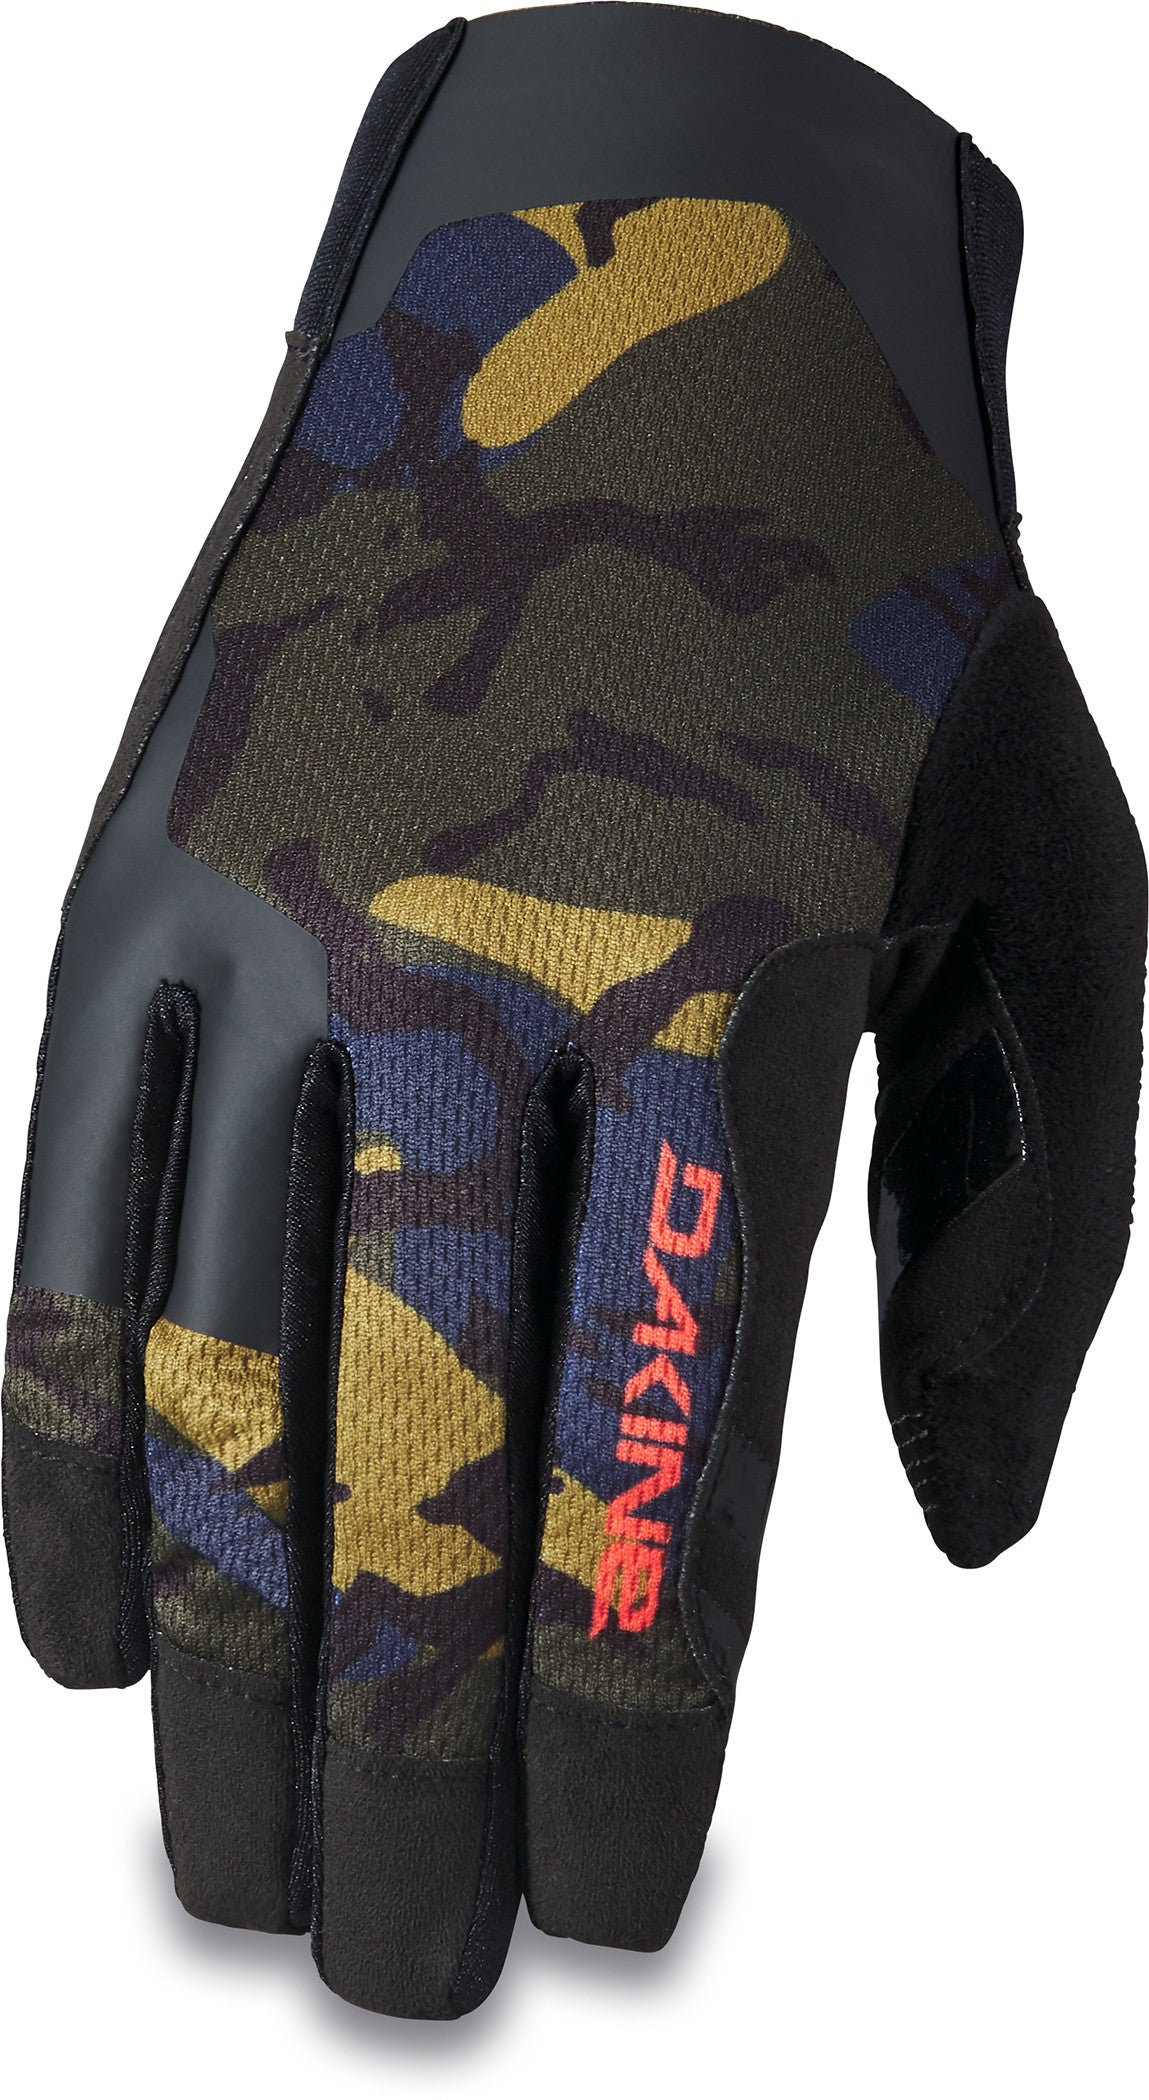 Dakine Covert Gloves